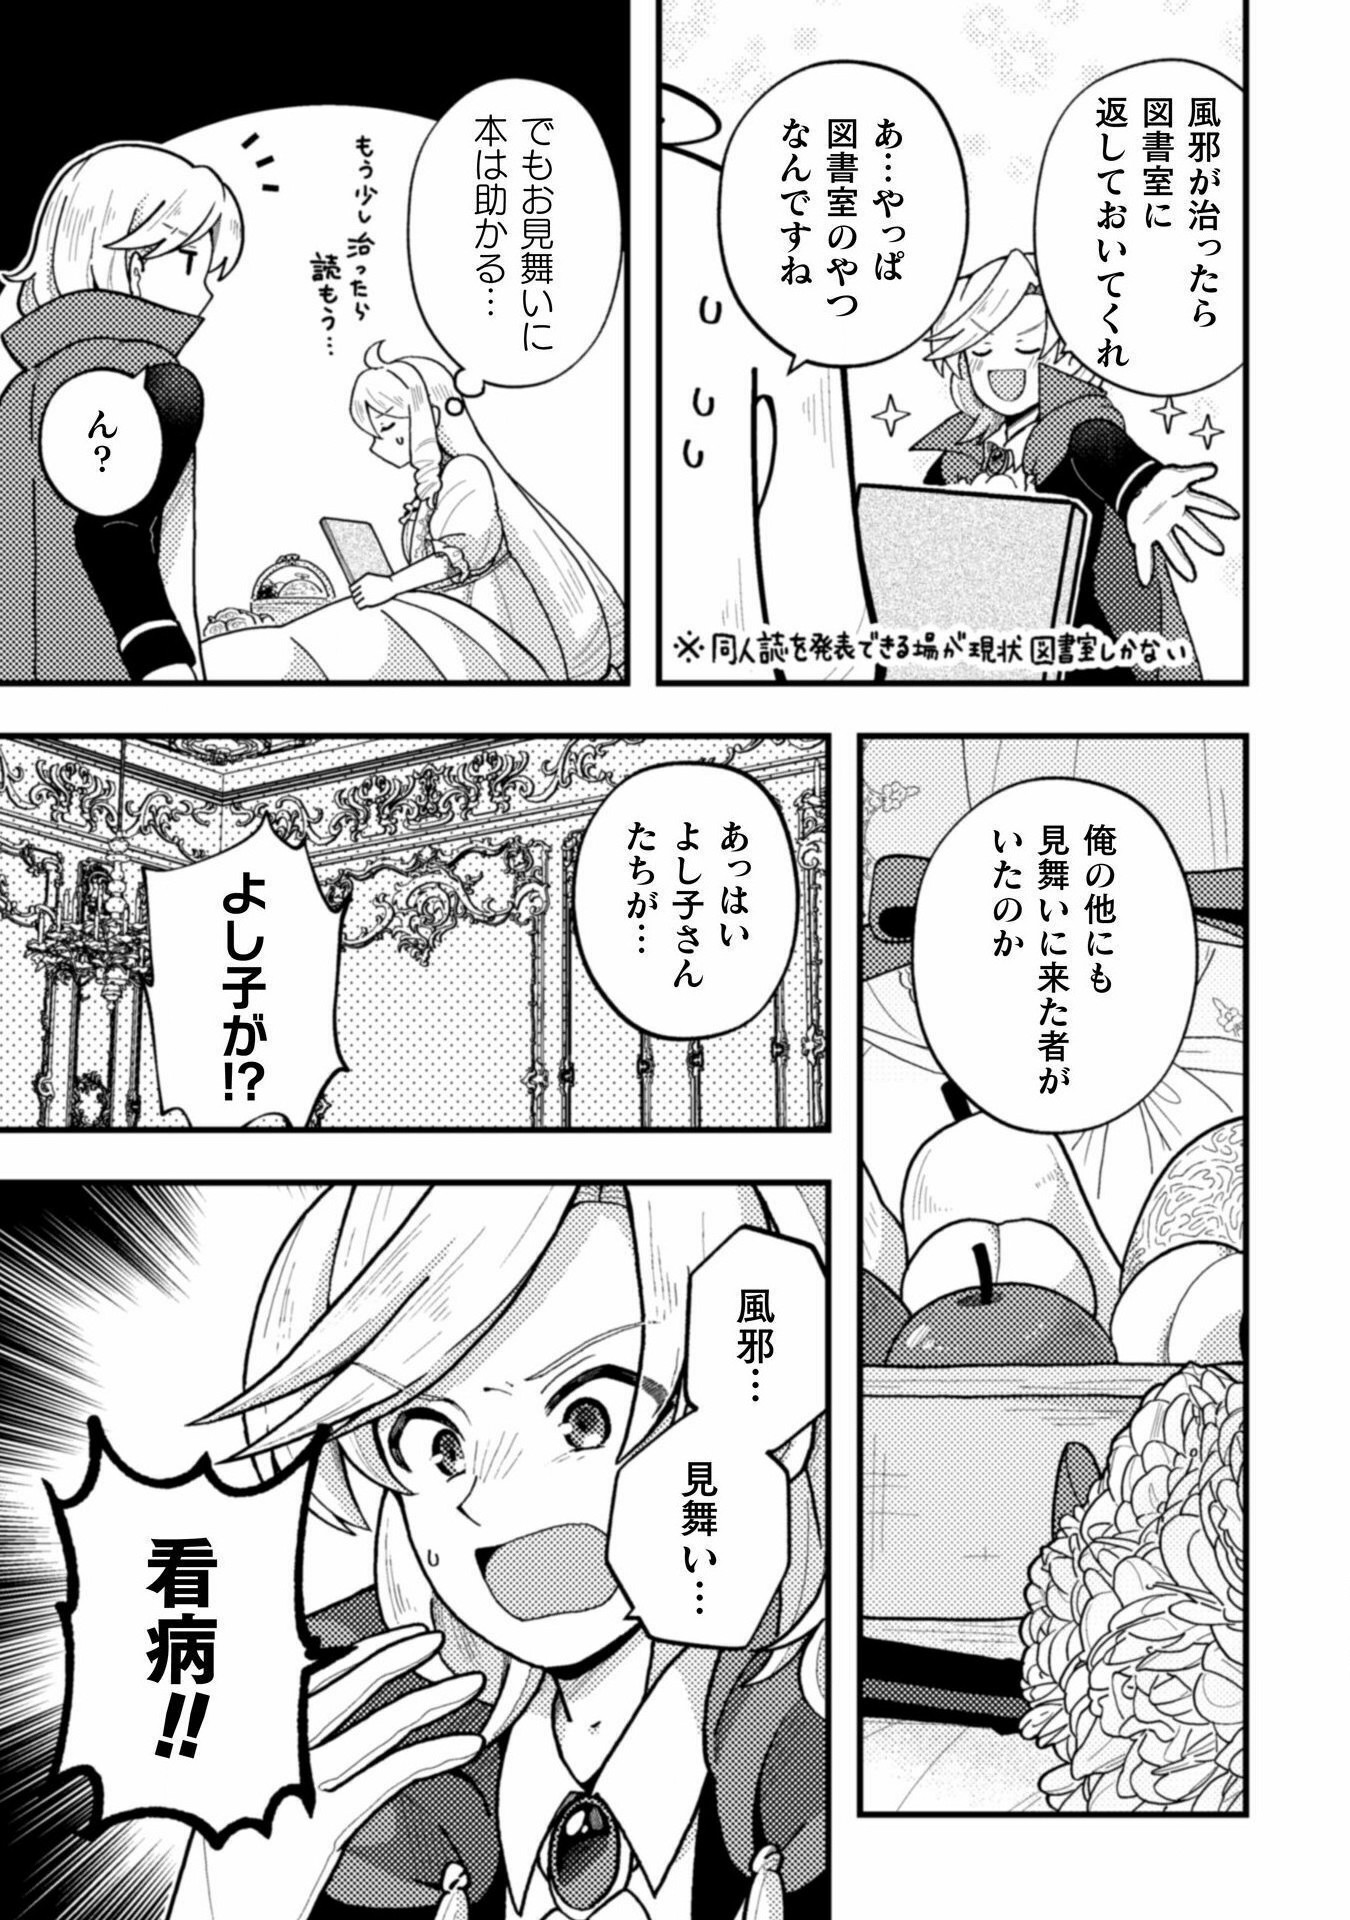 Otome Game no Akuyaku Reijou ni Tensei shitakedo Follower ga Fukyoushiteta Chisiki shikanai - Chapter 20 - Page 11